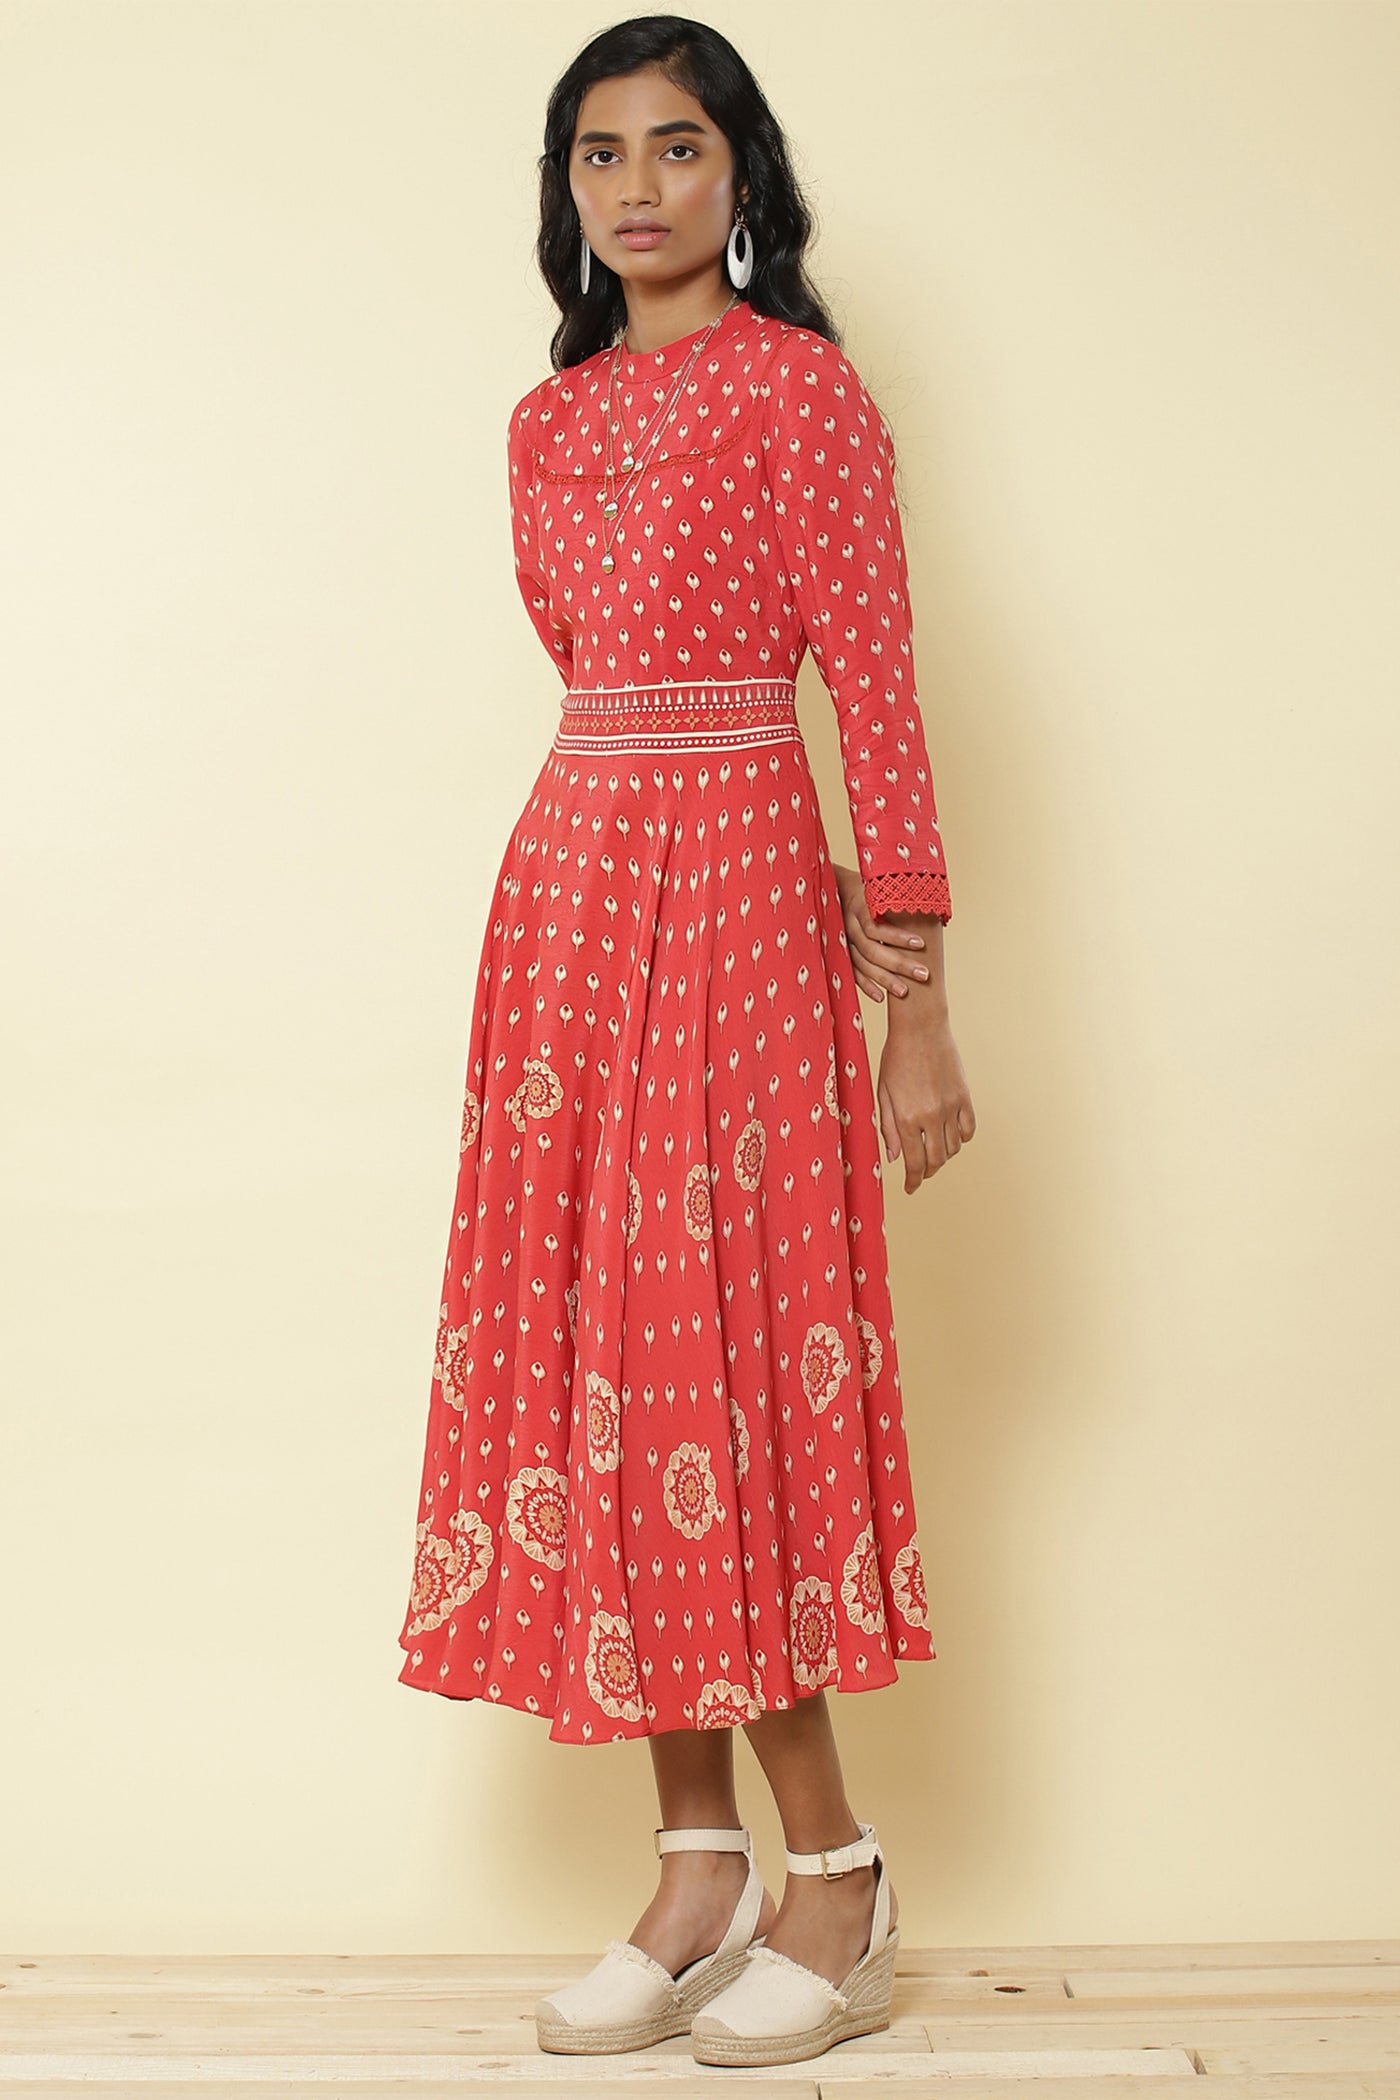 Ritu Kumar - Red Printed Long Dress - Melange Singapore - Indian Designer Wear Online Shopping